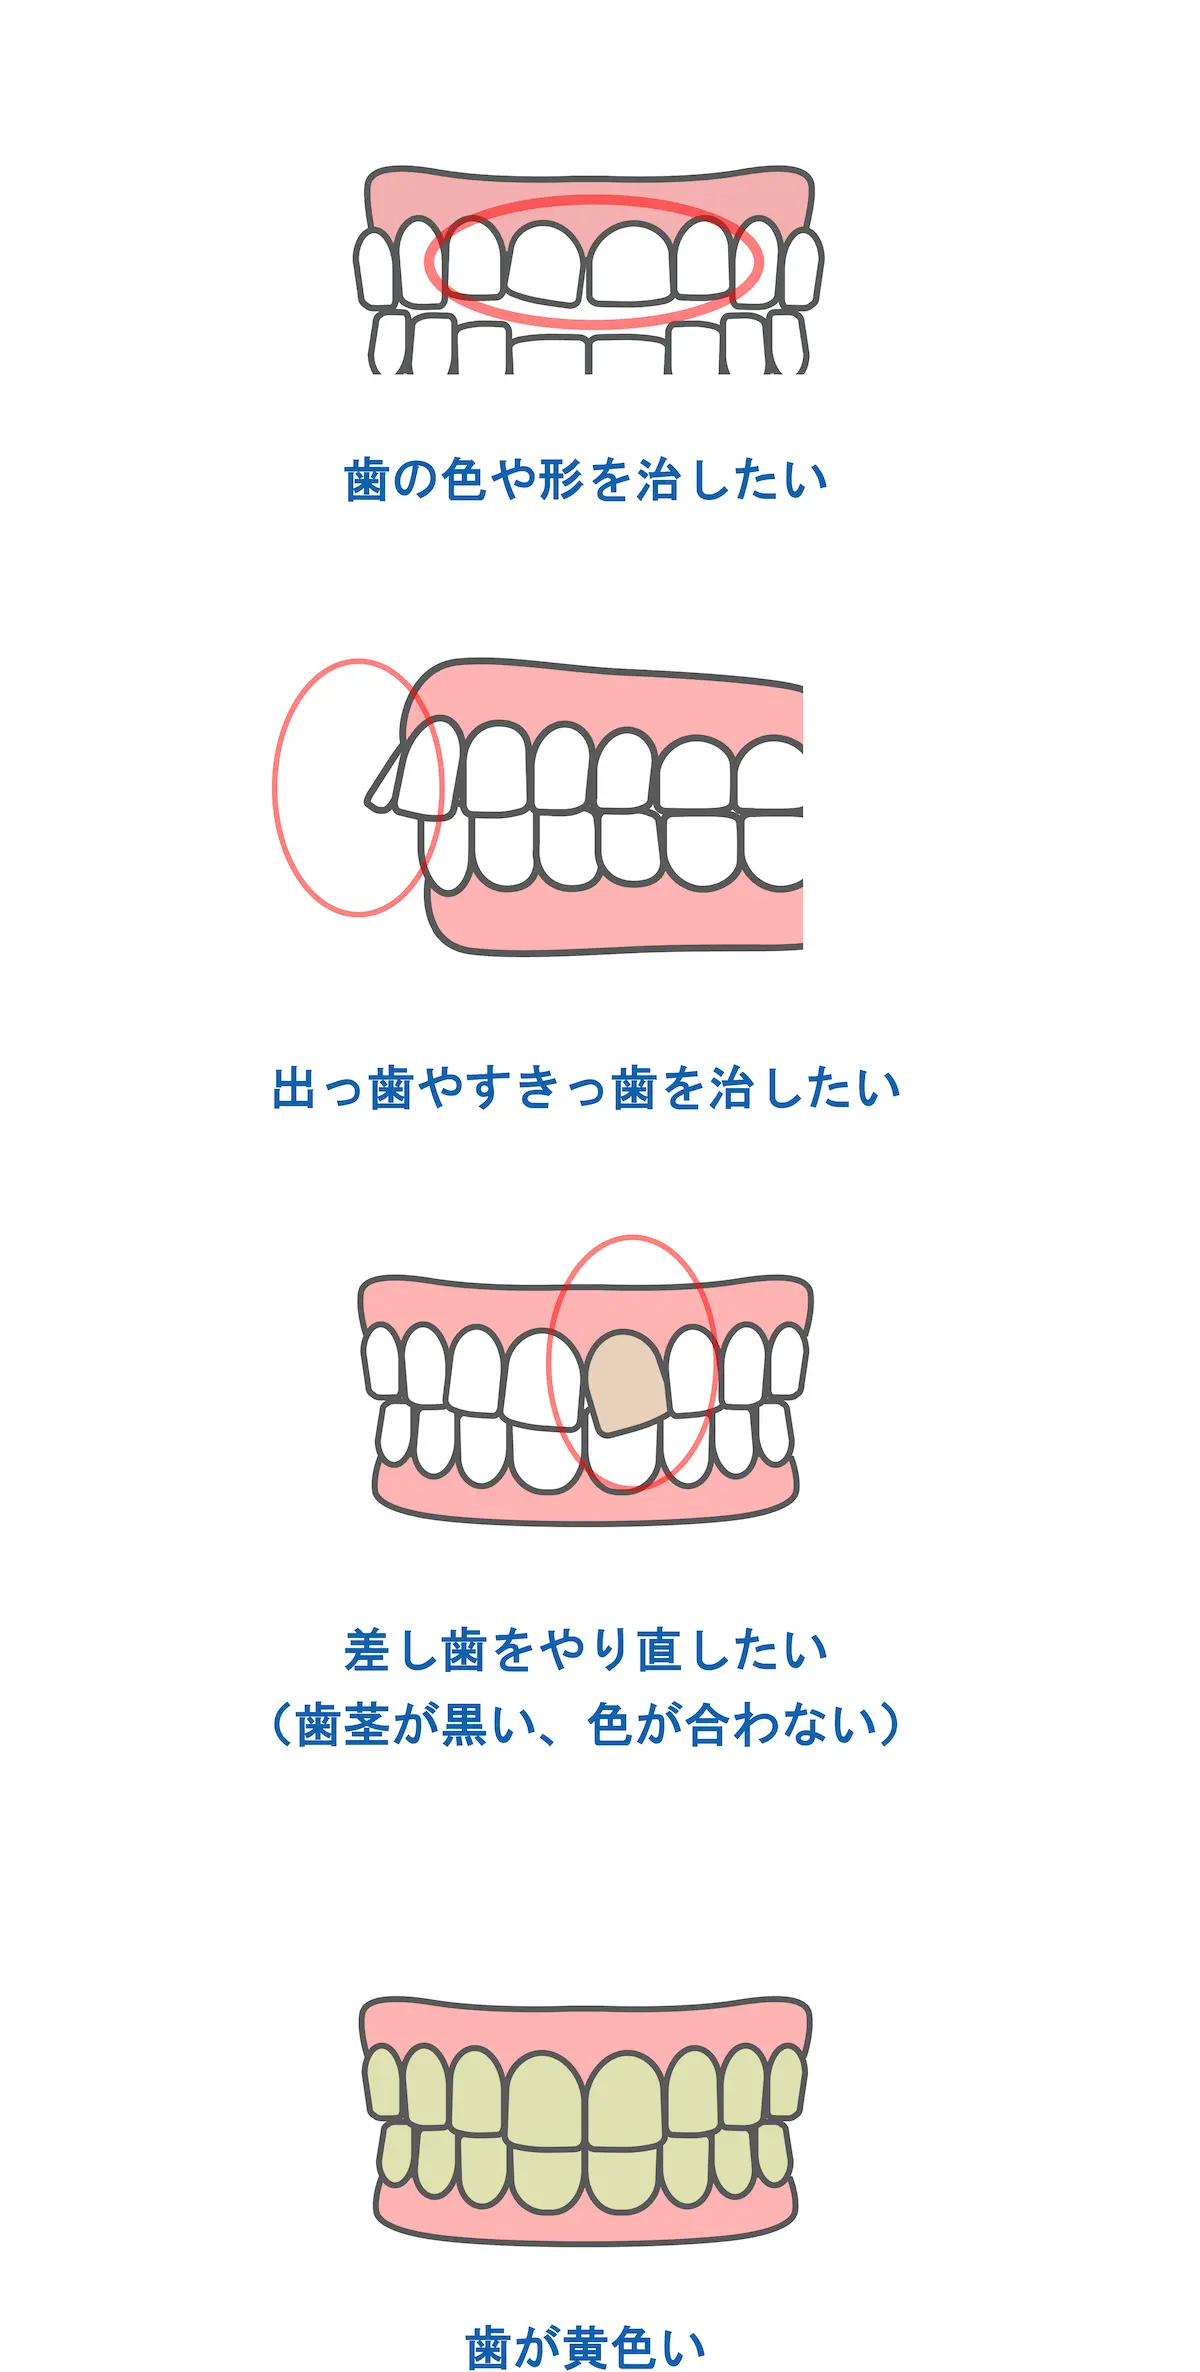 セラミック矯正に適している症例|東京・港区の歯医者